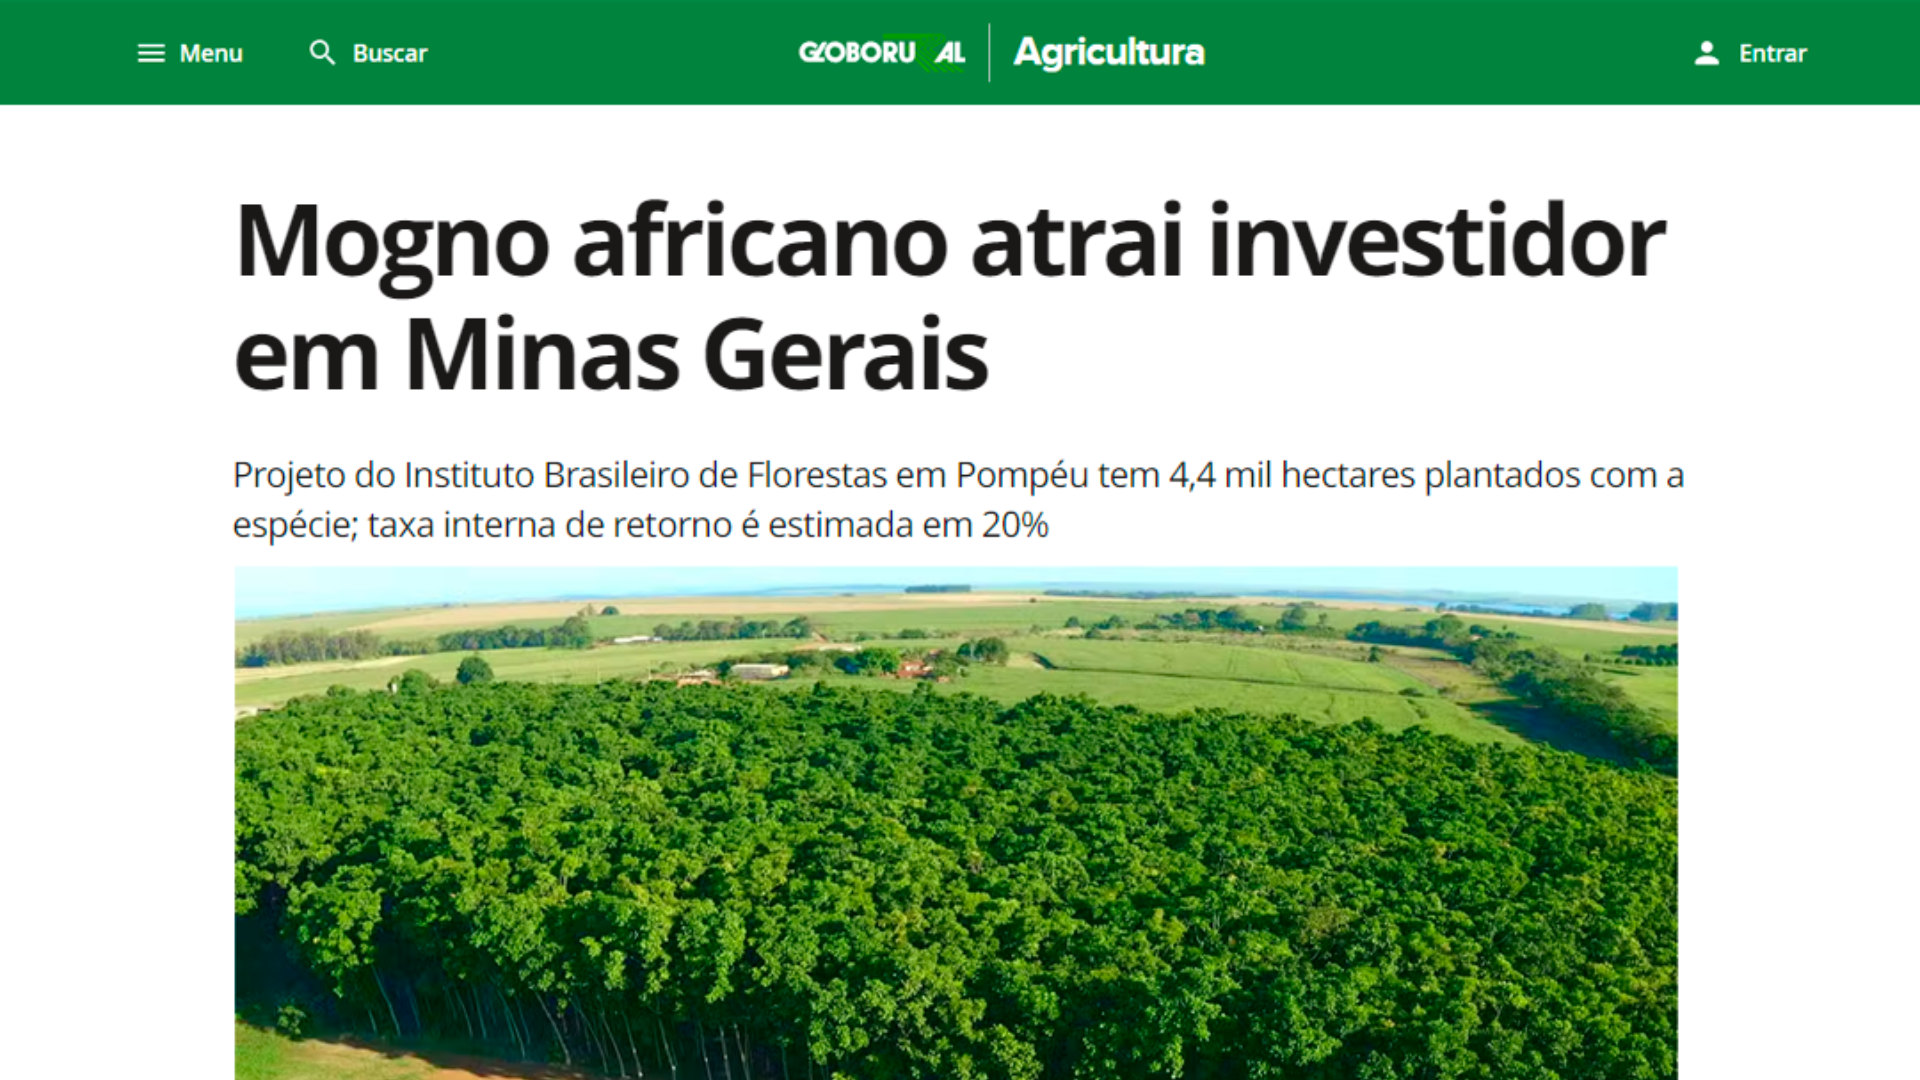 mogno-africano-atrai-investidores-em-mg